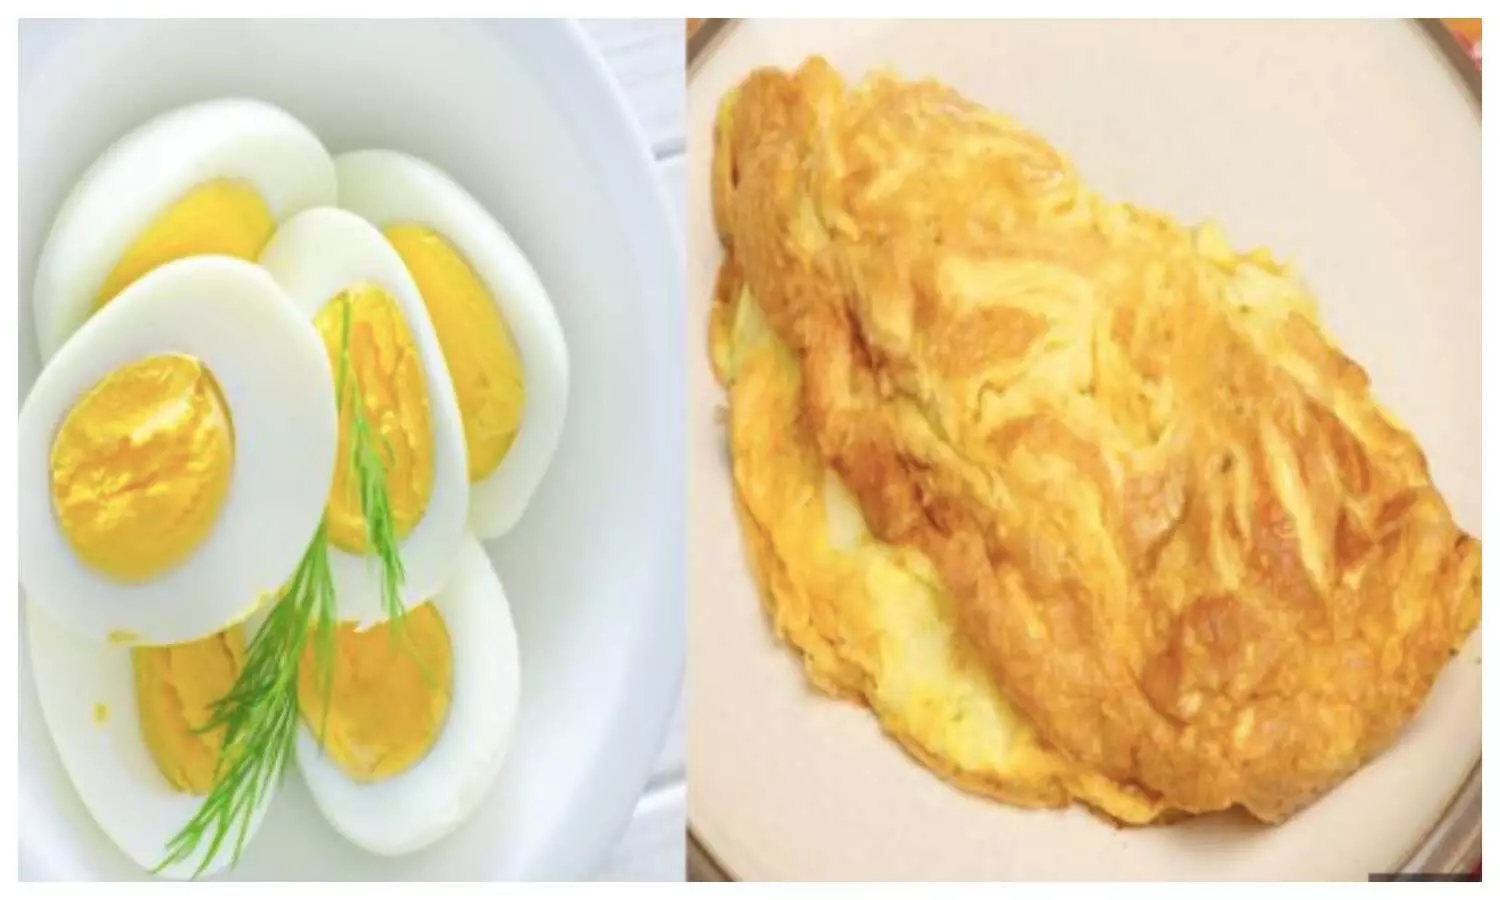 Boiled Egg vs Omelette